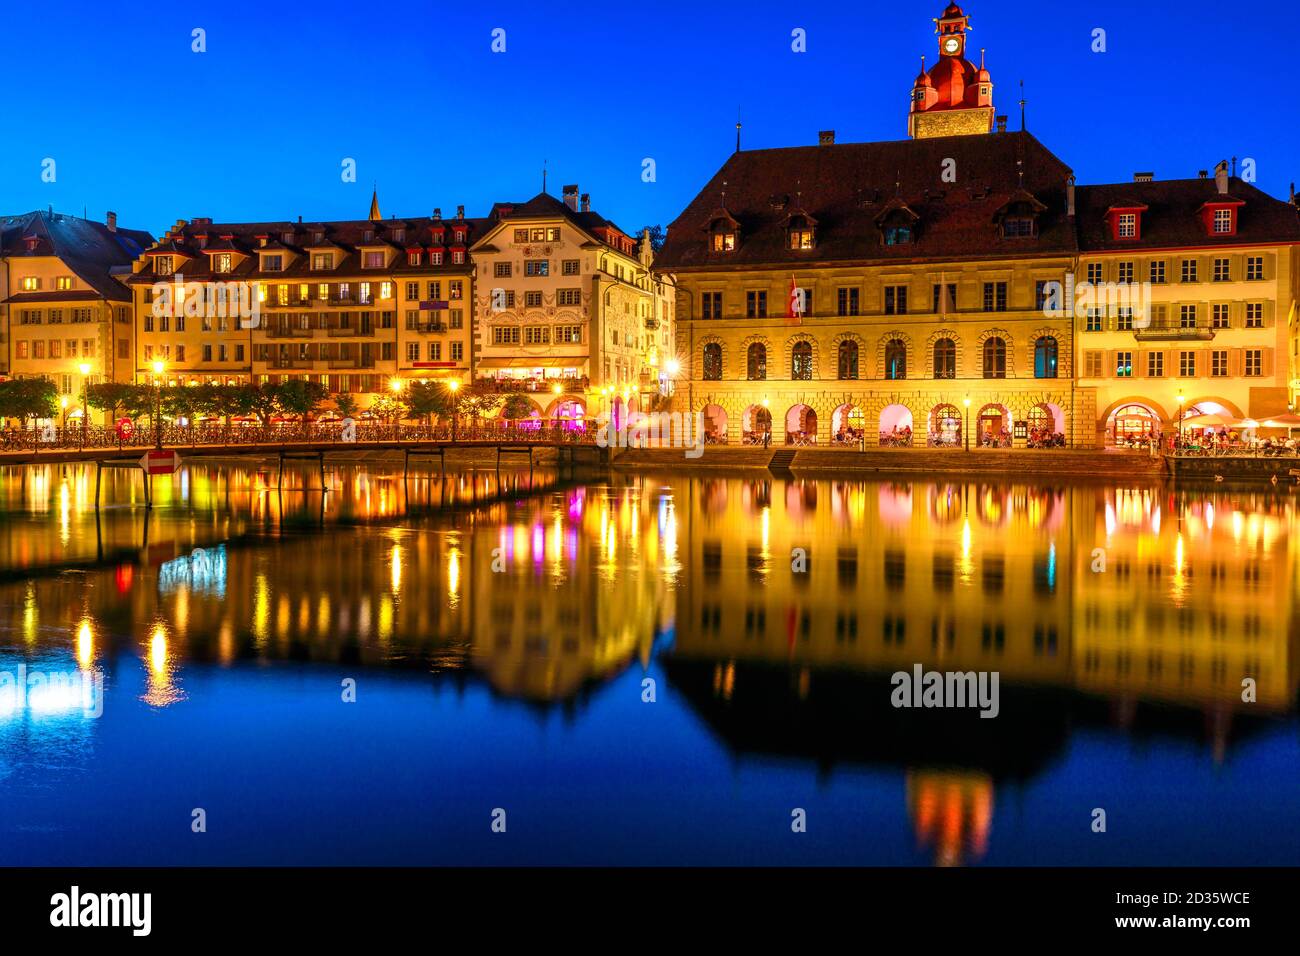 Mittelalterliche Stadt Luzern am Ufer des Vierwaldstatersees, beleuchtet bei Nacht. Kornschutte oder Rathaus und Gebäude spiegeln sich in Ruhe Stockfoto